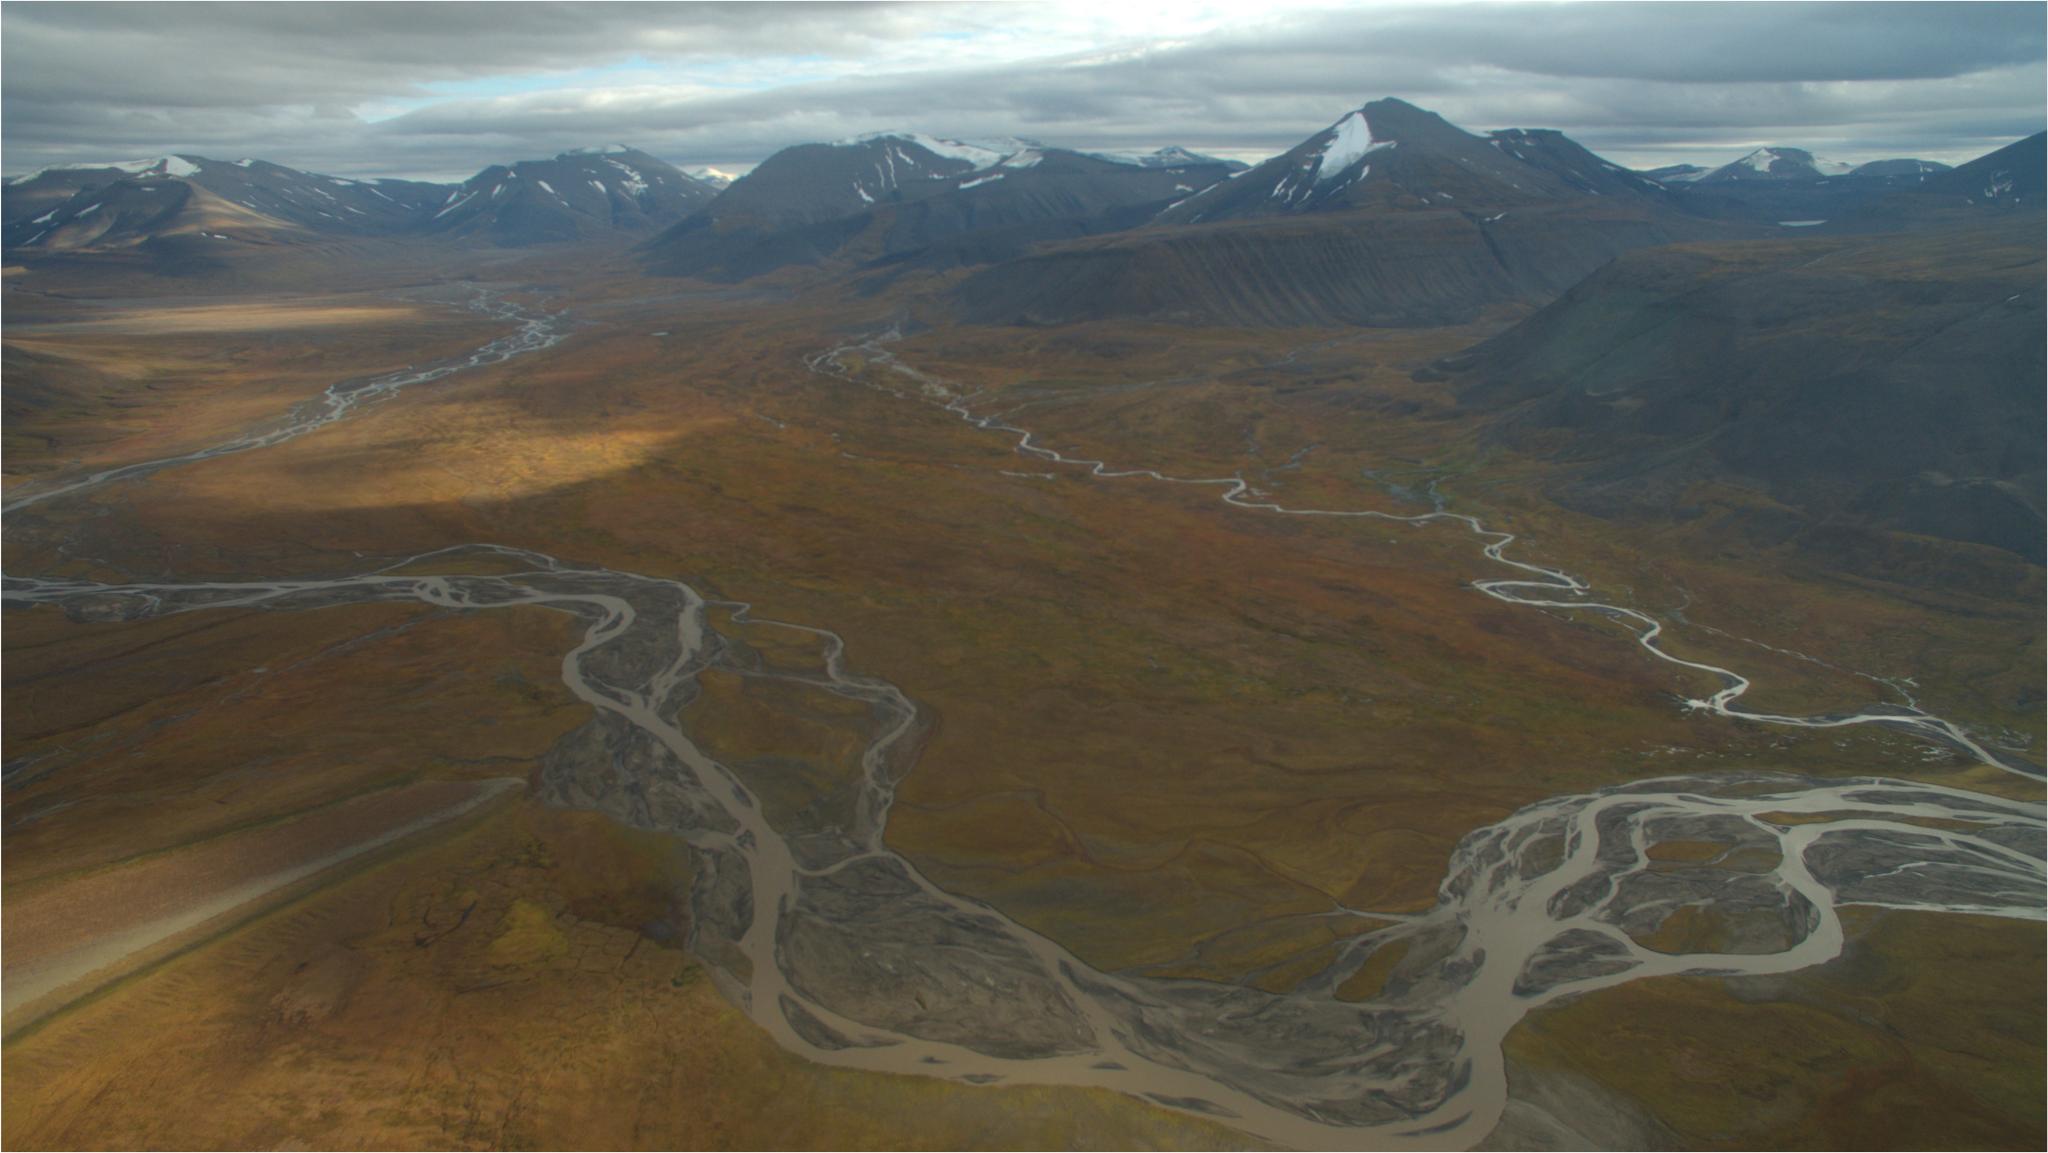 Landskapet på Svalbard vitnar om breens effektive utgraving av vide dalføre og fjordar over tusenvis av år. Mindre sidedalar ber preg at rennande vatn har skjært seg ned i landskapet og danna elvesletter og vifteformer i dalmunningane. Desse karakteristiske spora fortel oss at landskapet har vore våtare før i tida.